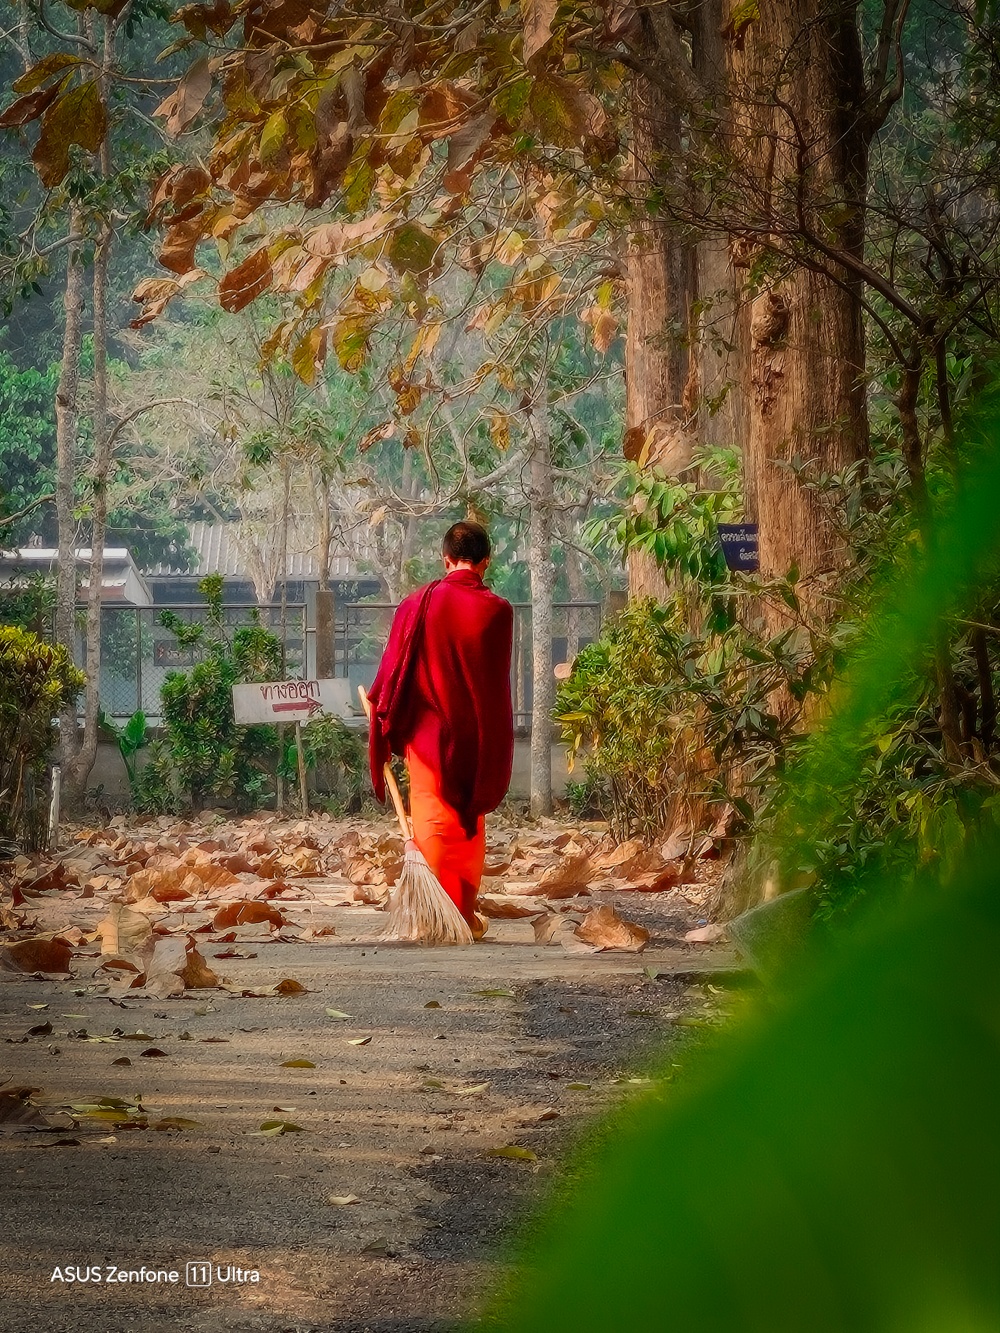 由於僧侶的紅衣非常明顯，這張照片刻意使用綠葉作為前景，營造出對比感。